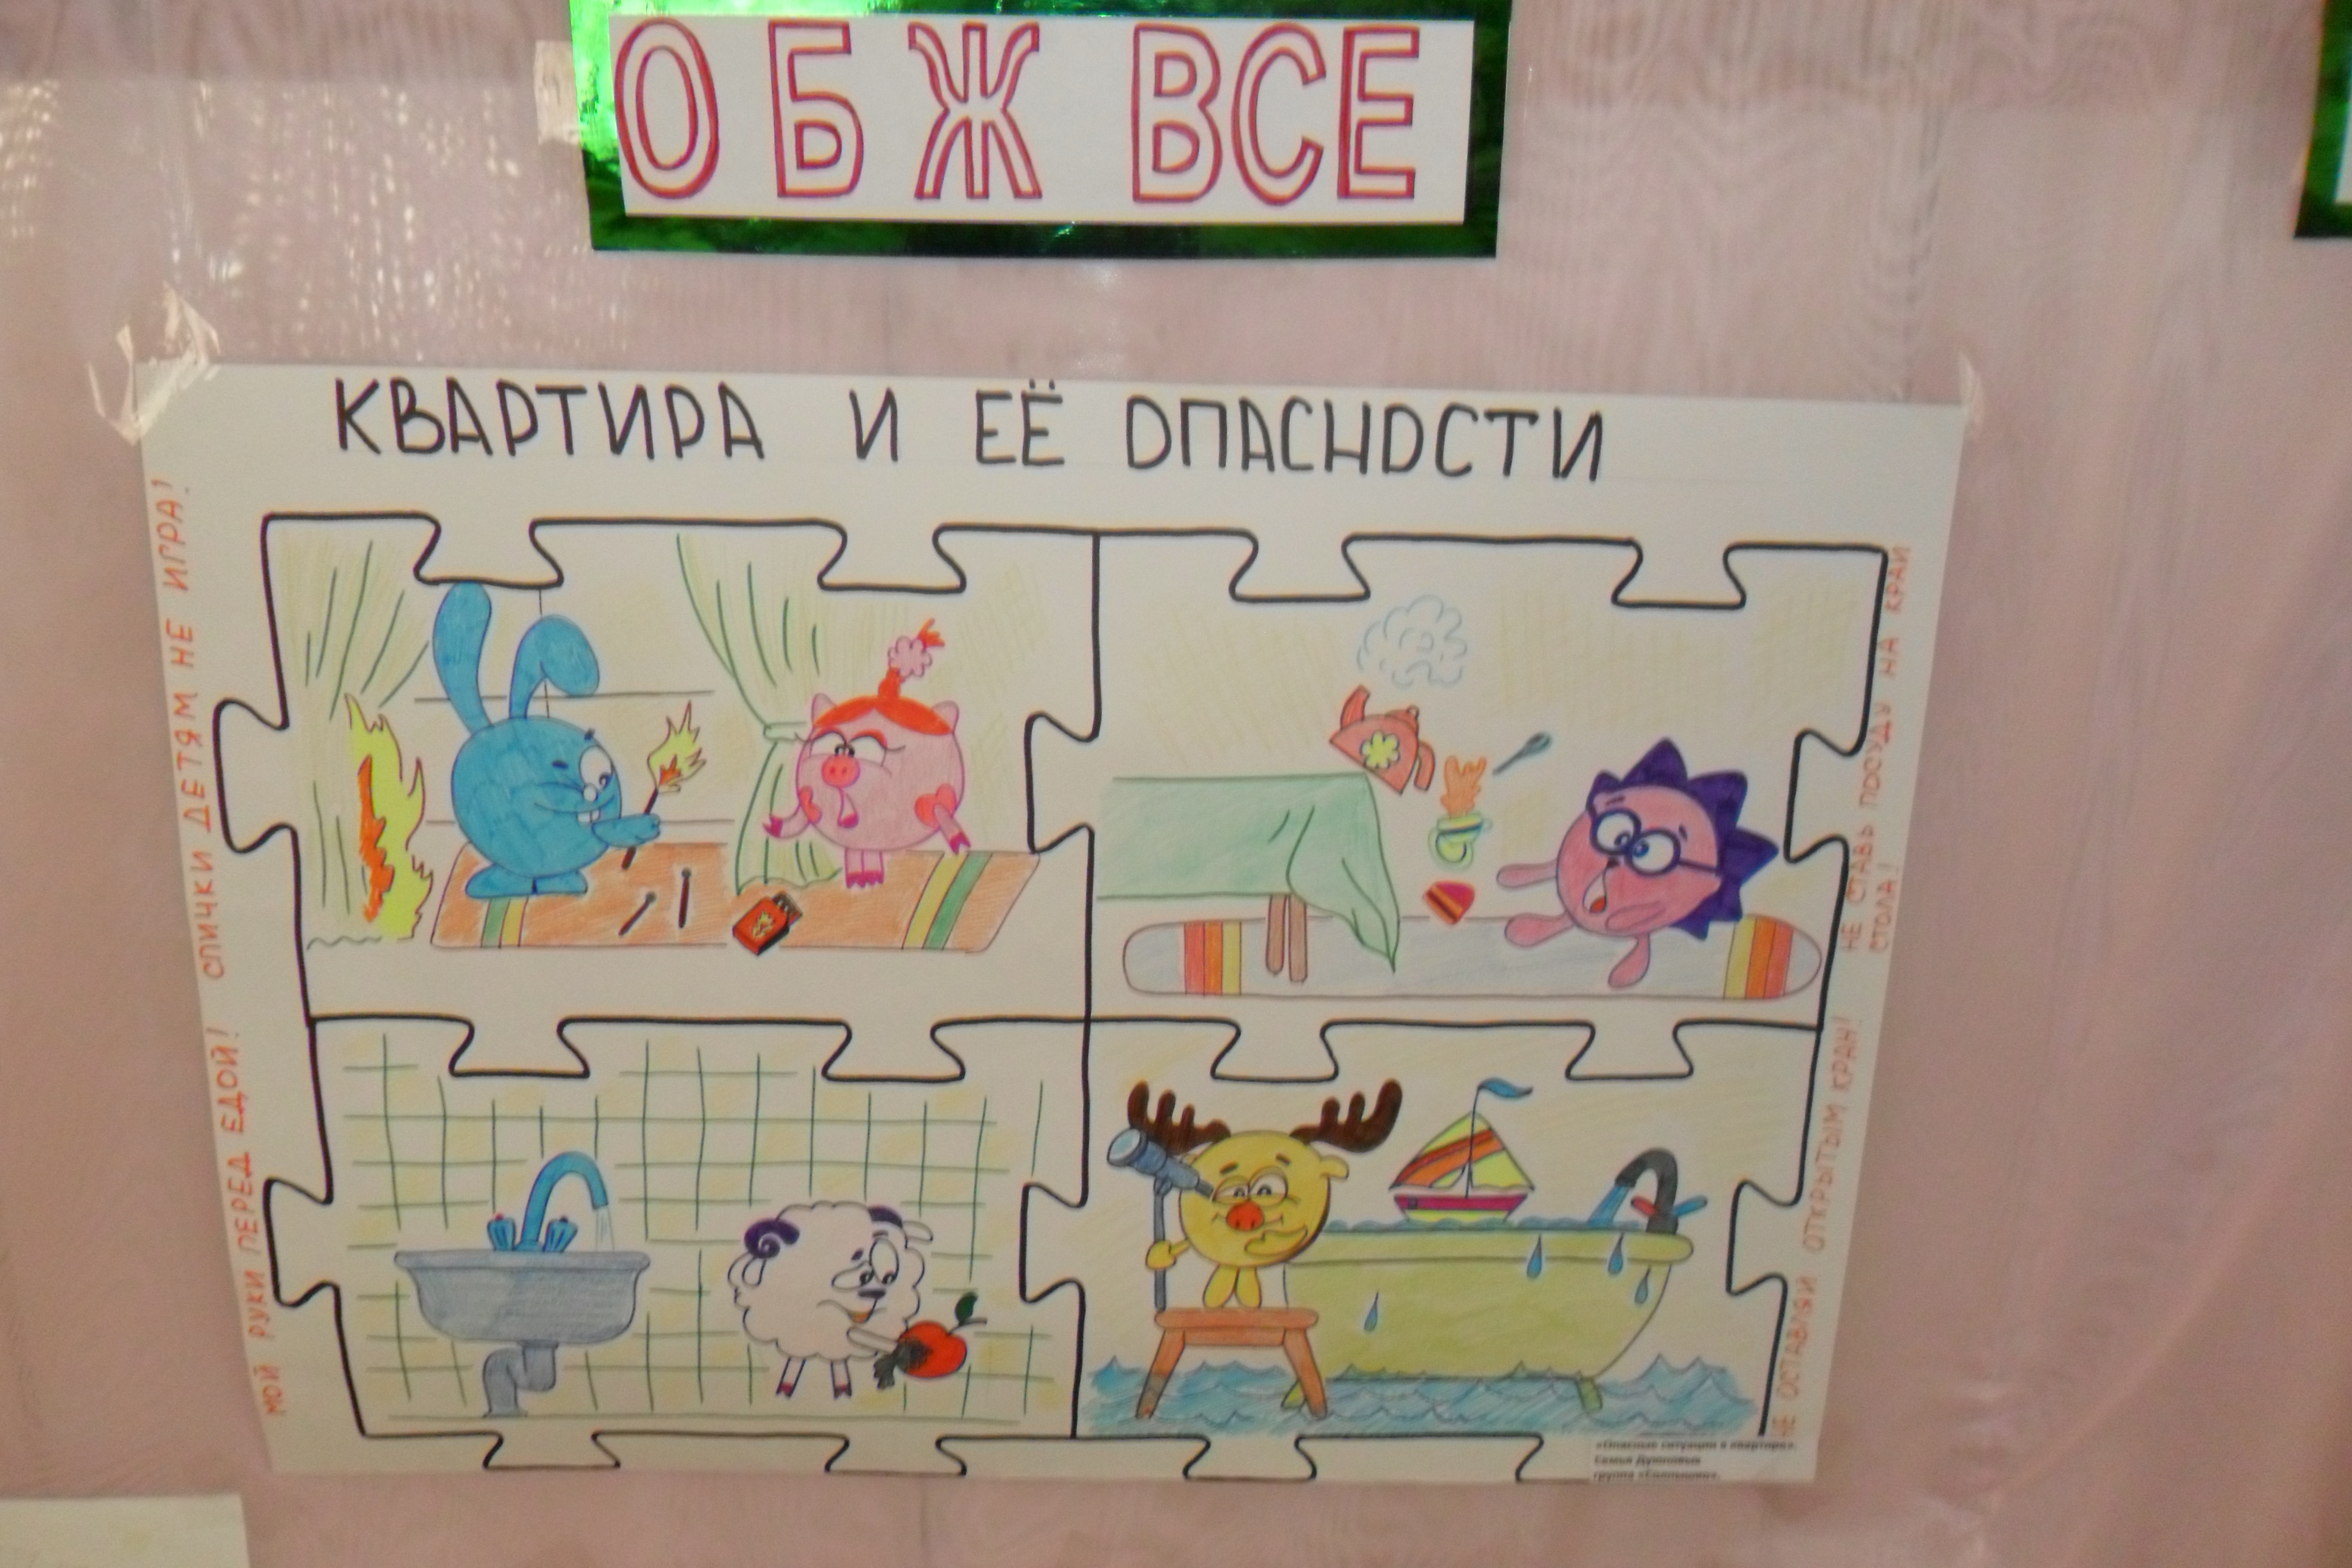 21 Марта 2014 - Детский сад "Ромашка" 25 